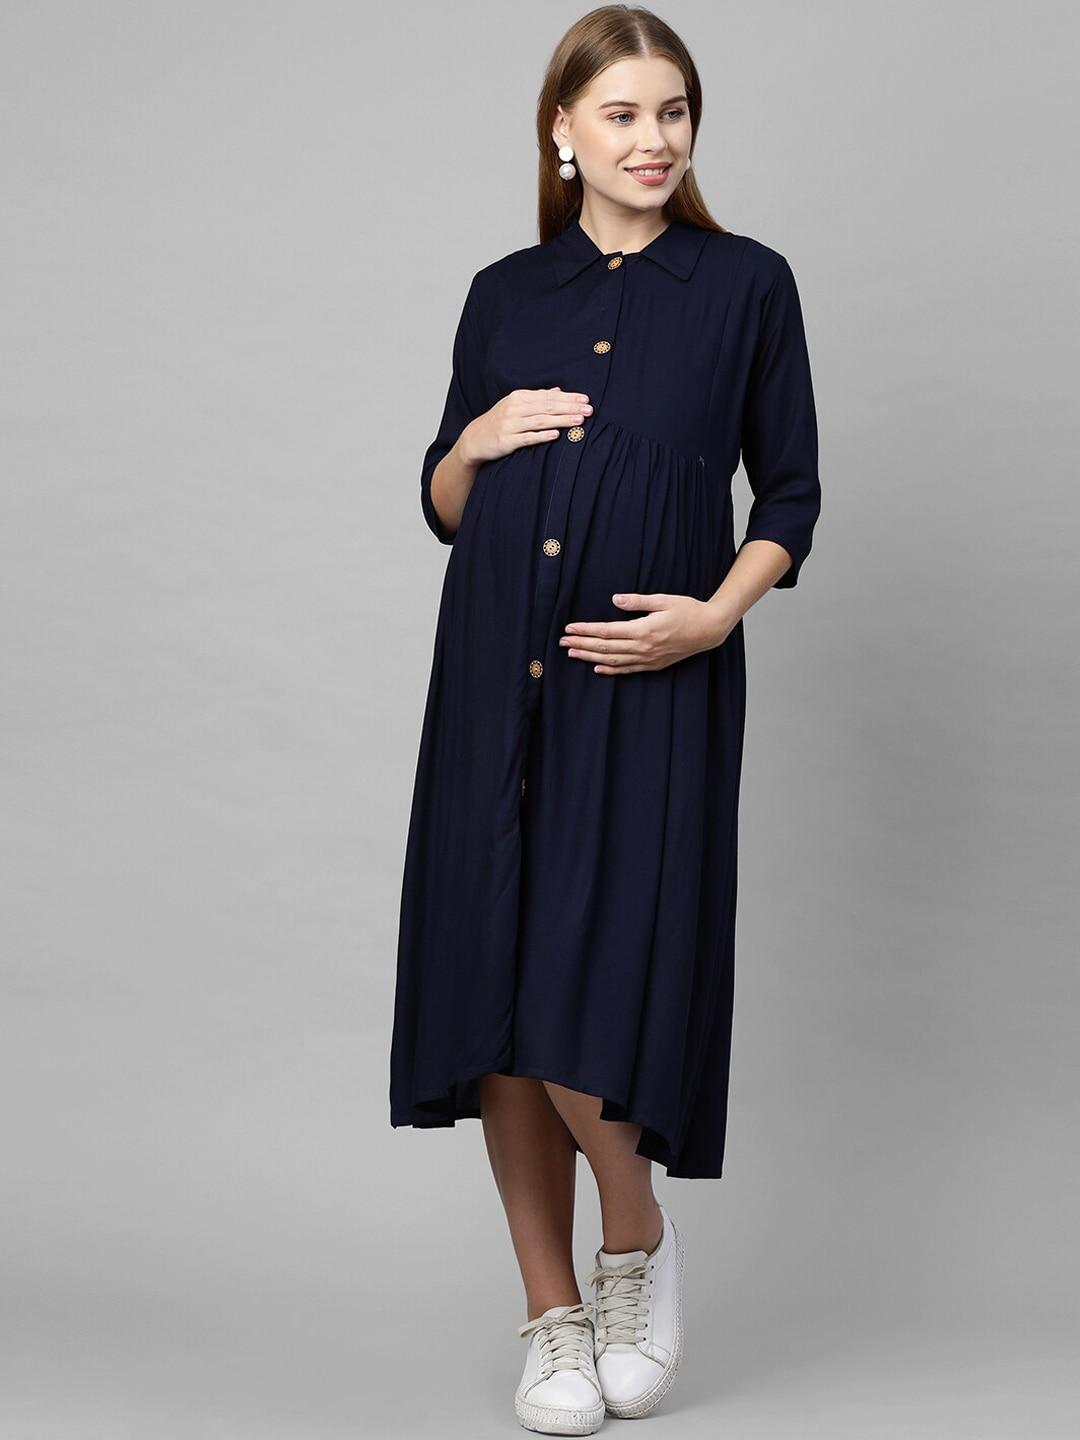 momtobe navy blue maternity shirt midi dress